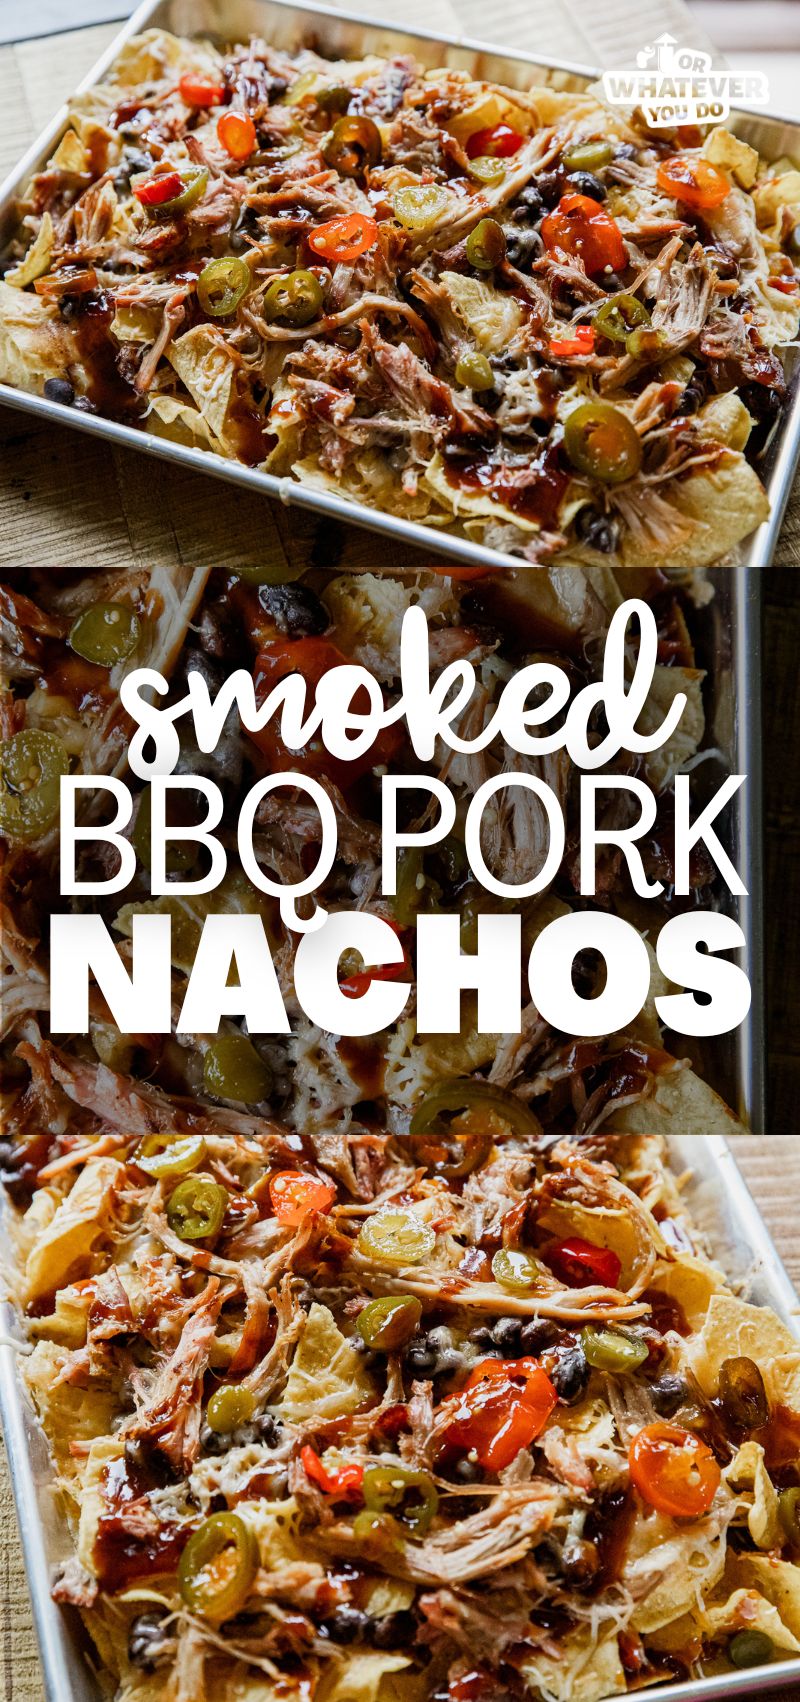 Smoked BBQ Pork Nachos